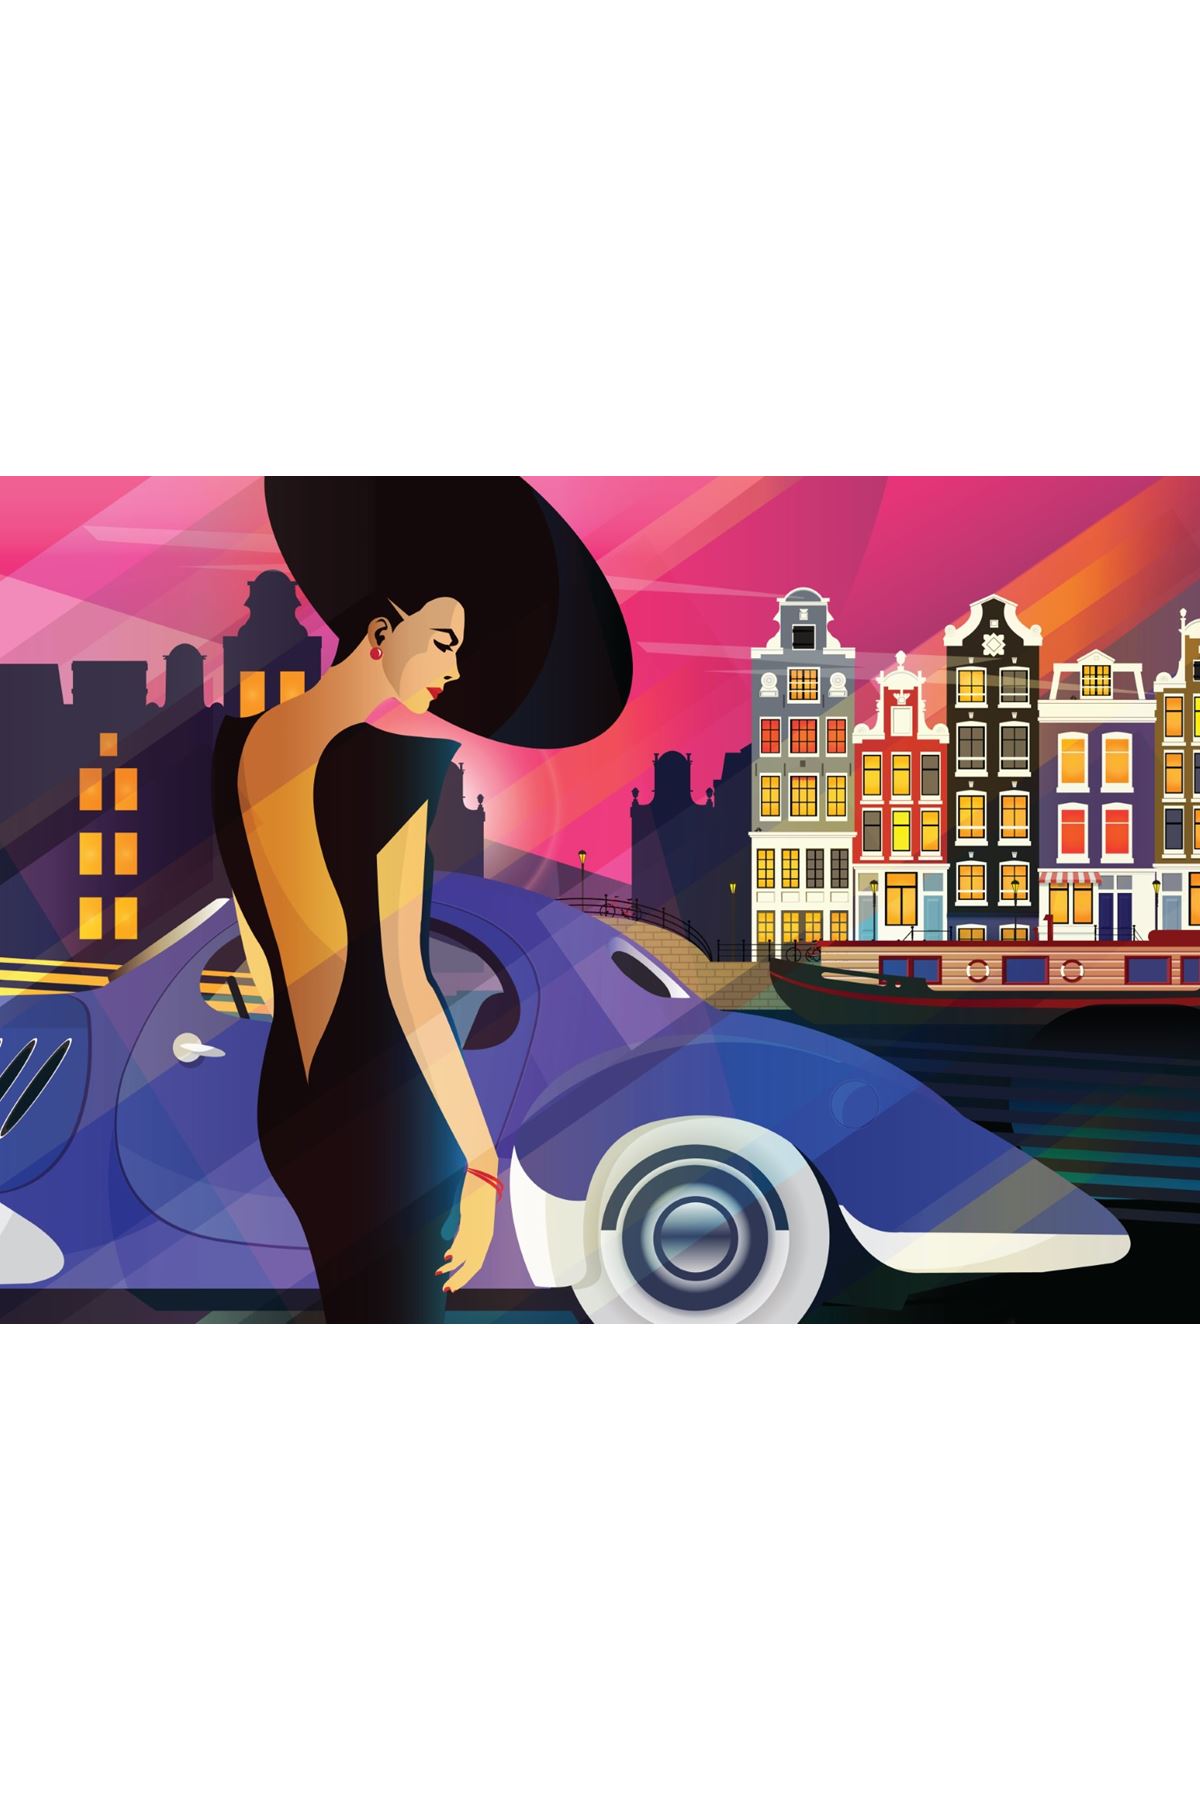 Amsterdam, Kadın ve Araba